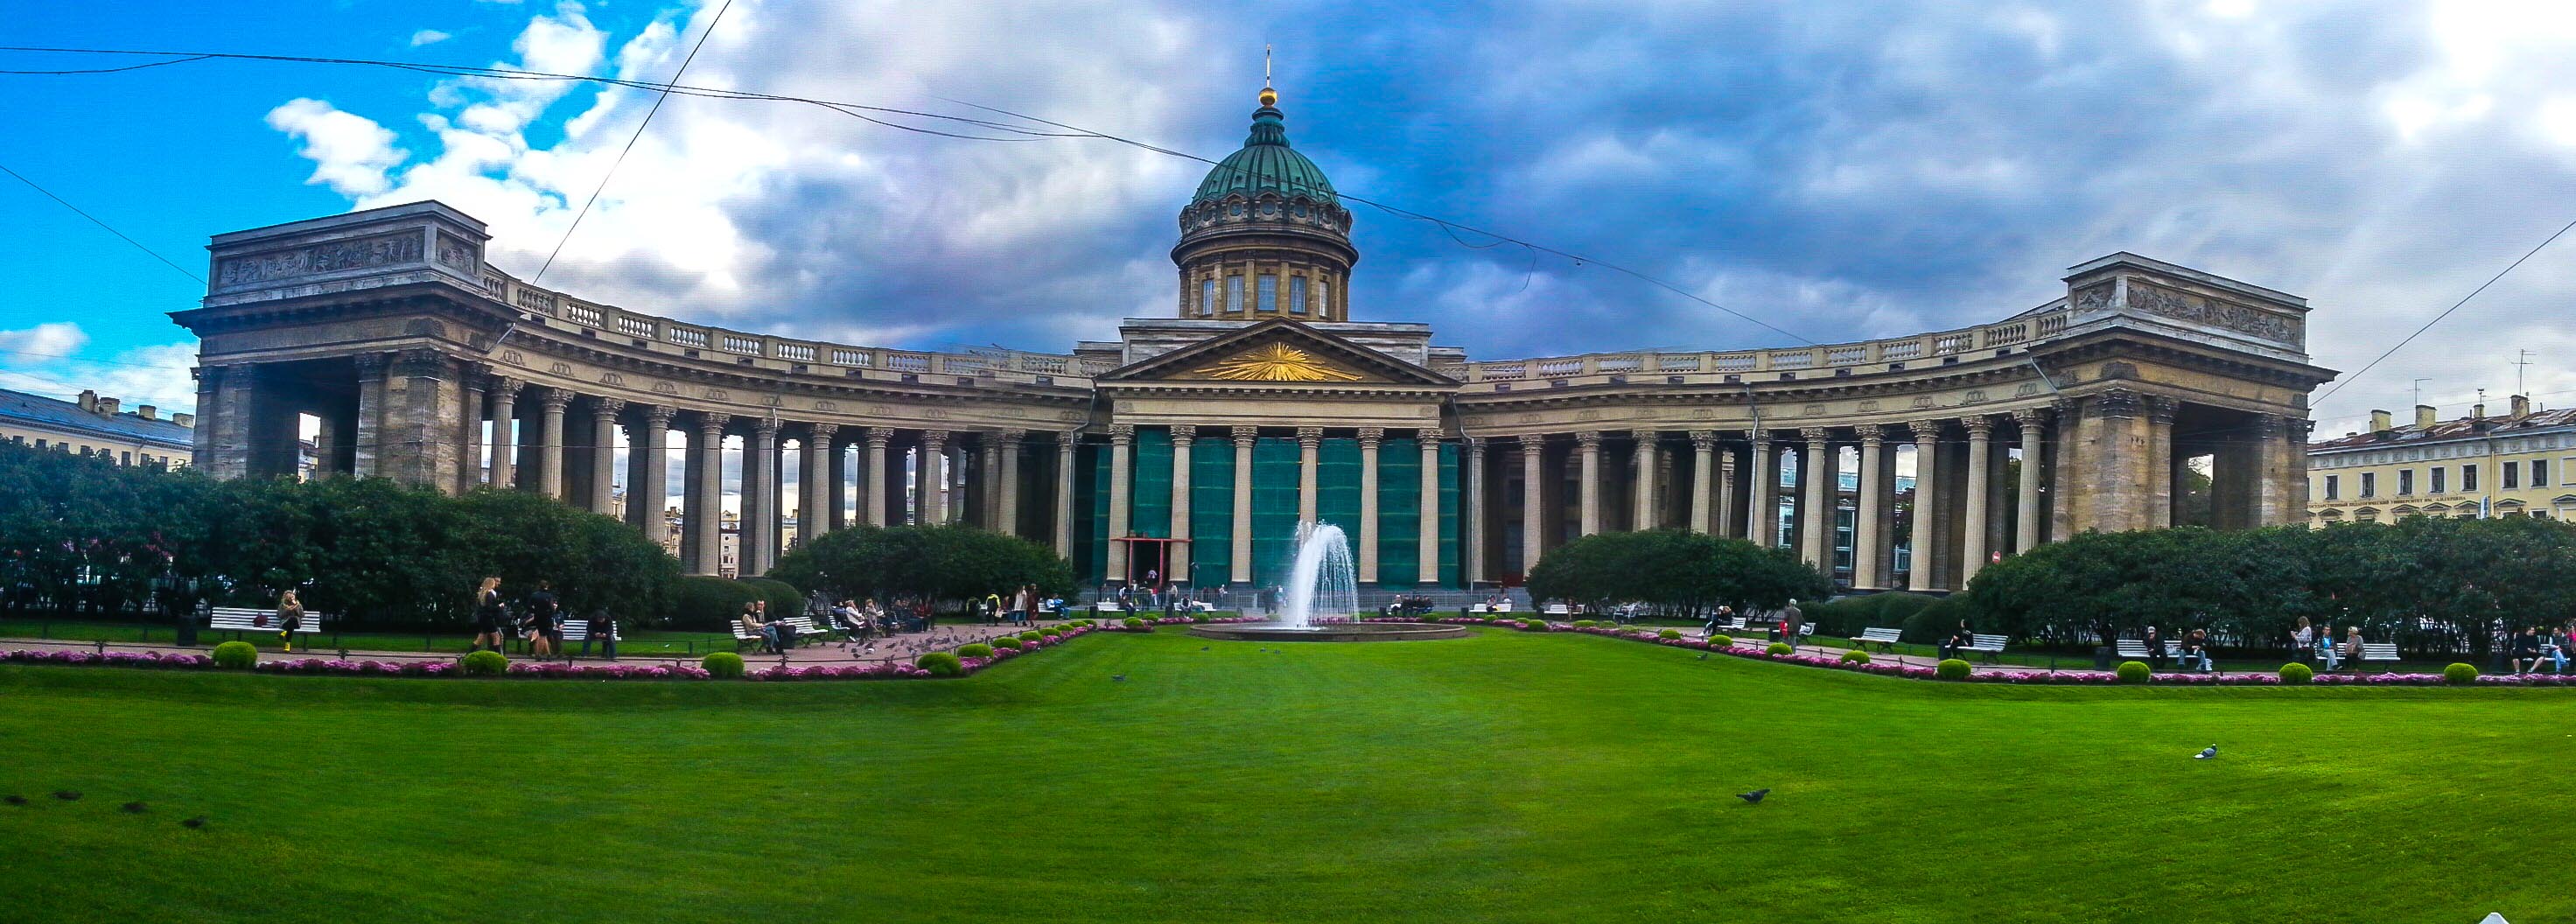 Saint Petersburg, Europe's prettiest city | Unusual Traveler